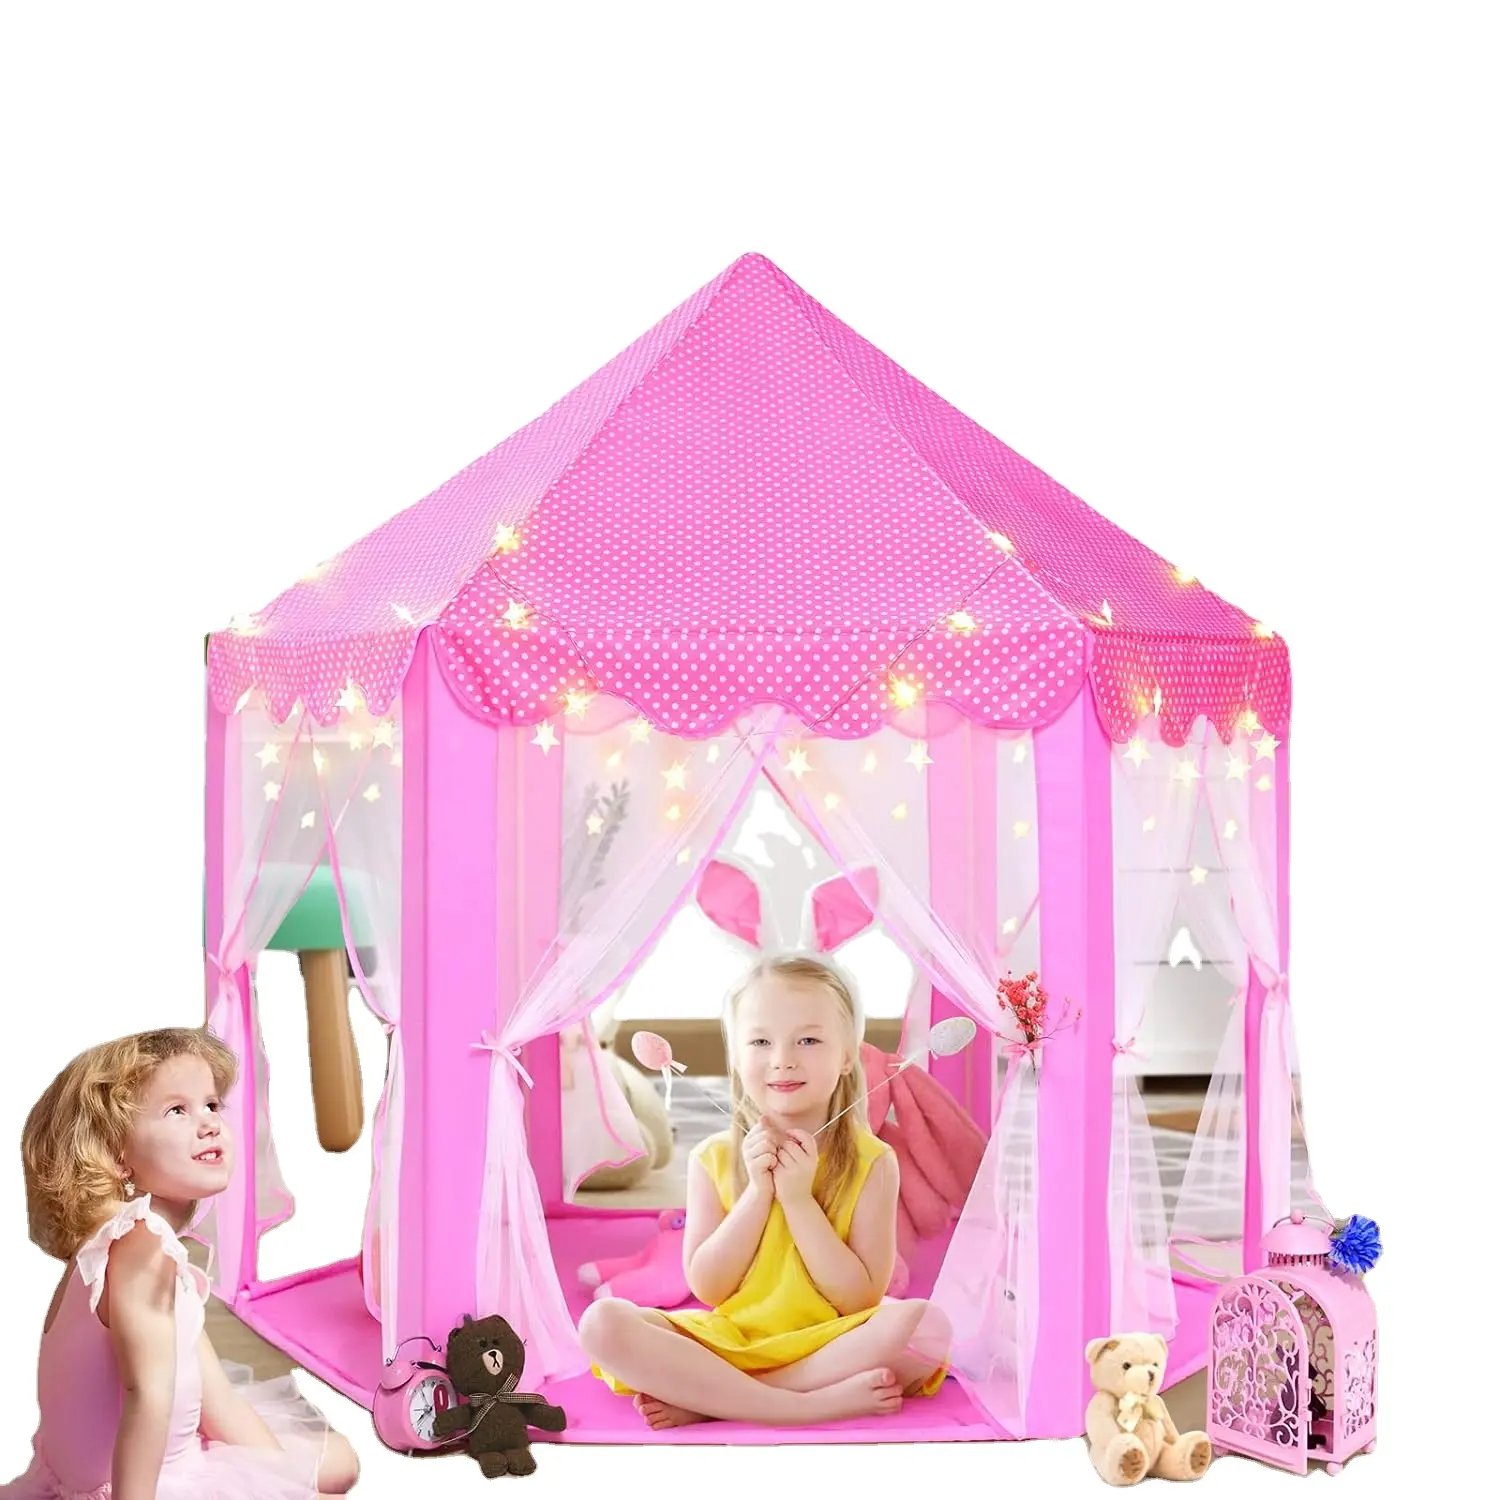 Prenses çadır kızlar büyük Playhouse çocuklar kale oyun çadırı yıldız ışıkları oyuncak çocuklar için kapalı ve açık oyunlar